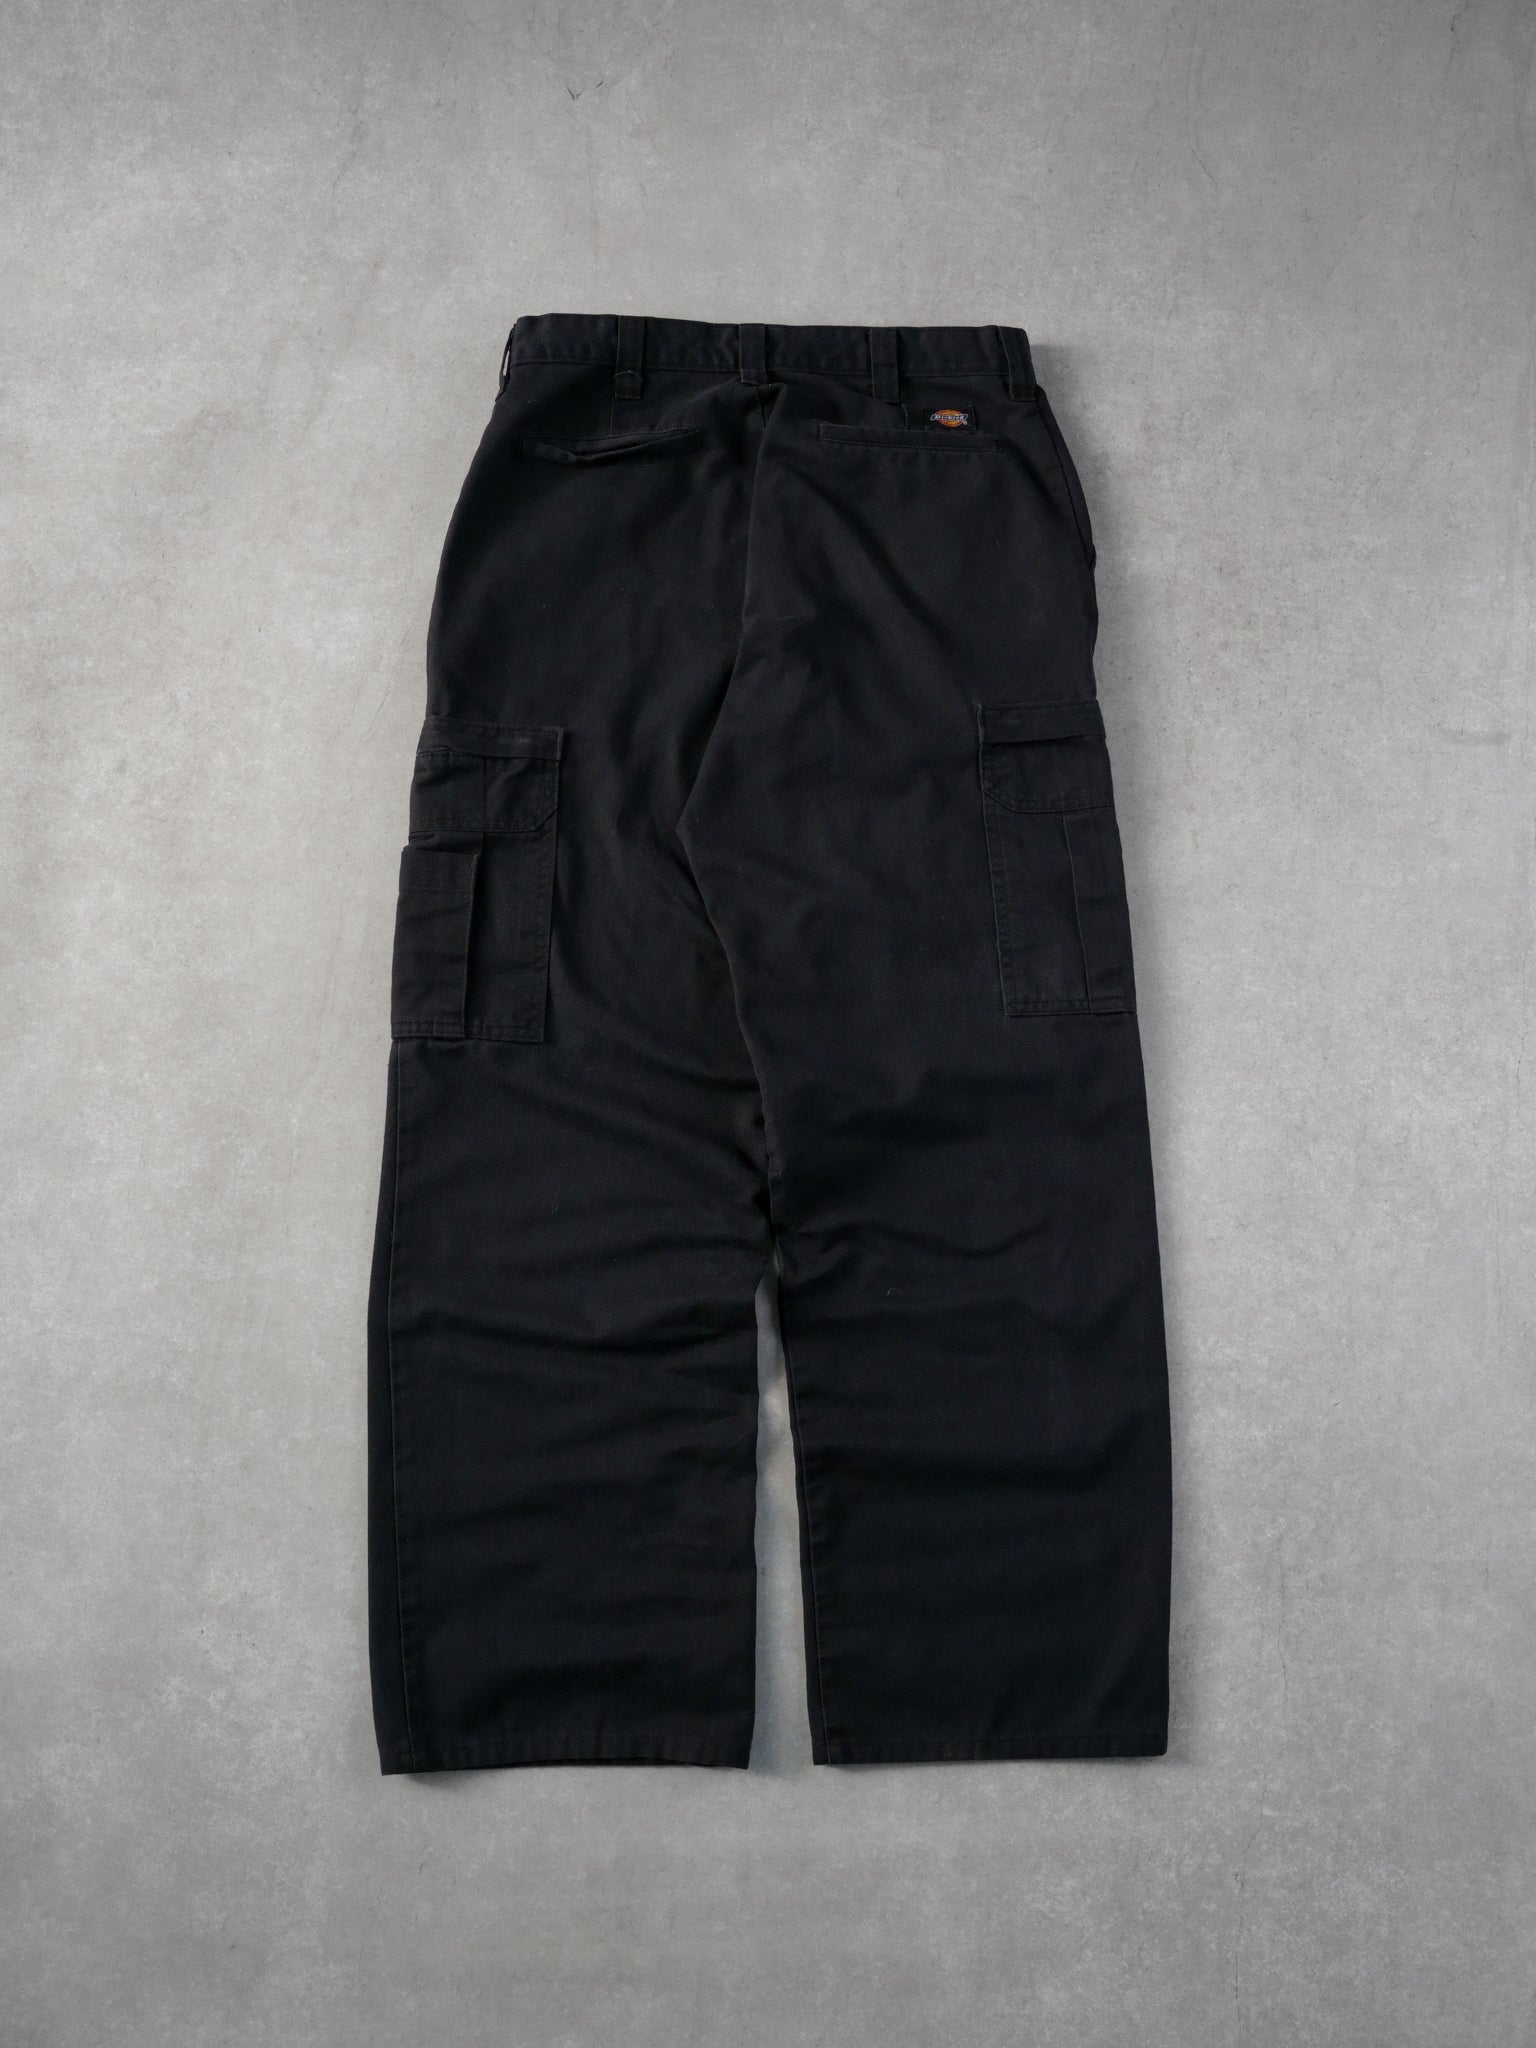 Vintage 90s Black Dickies Cargo Pants (31x32)